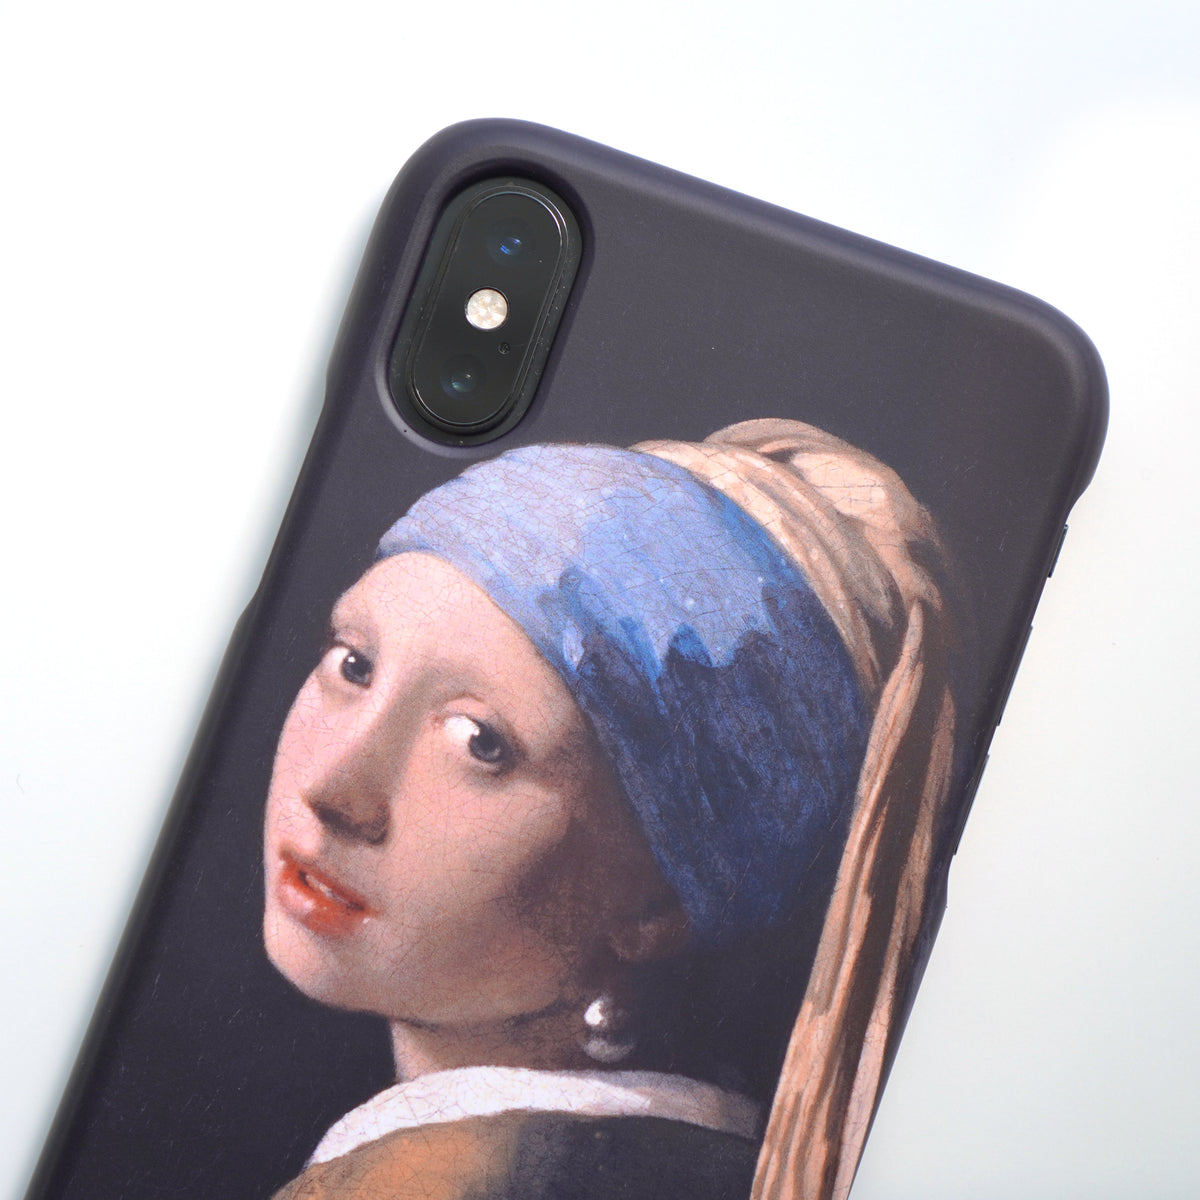 ヨハネス・フェルメール「真珠の耳飾りの少女」/ Johannes Vermeer「Girl with a Pearl Earring」